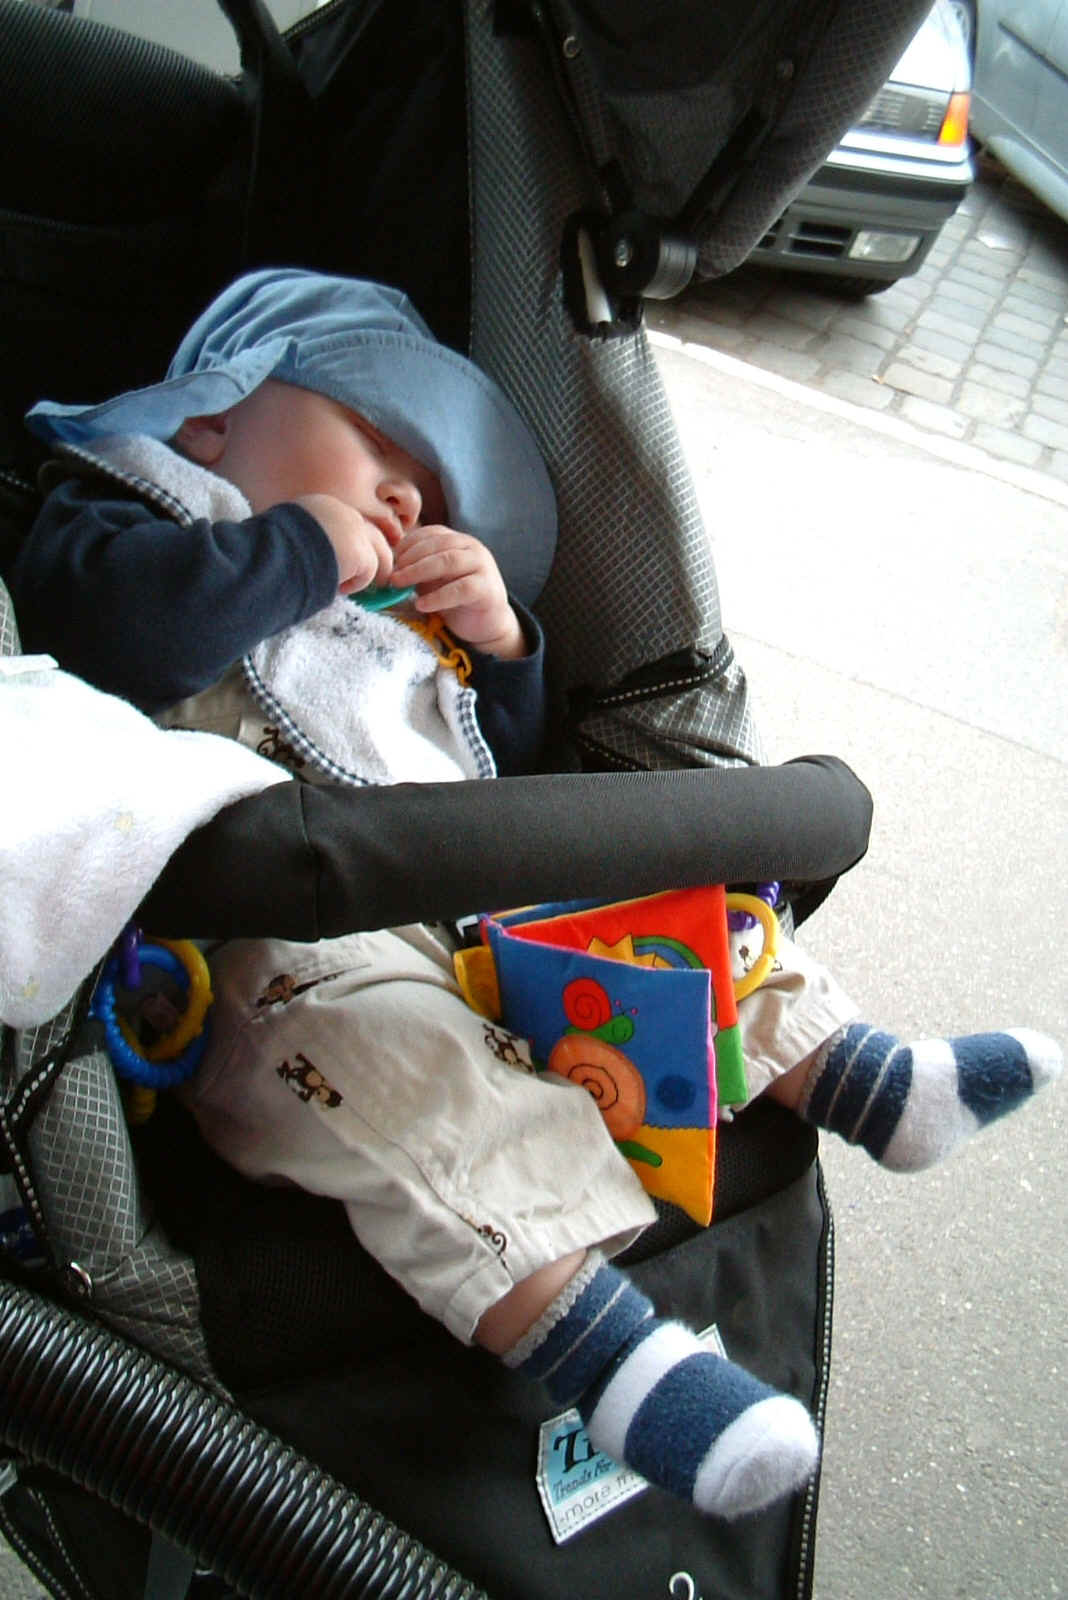 7- Dscf0098 sleeping in stroller.JPG (540410 bytes)